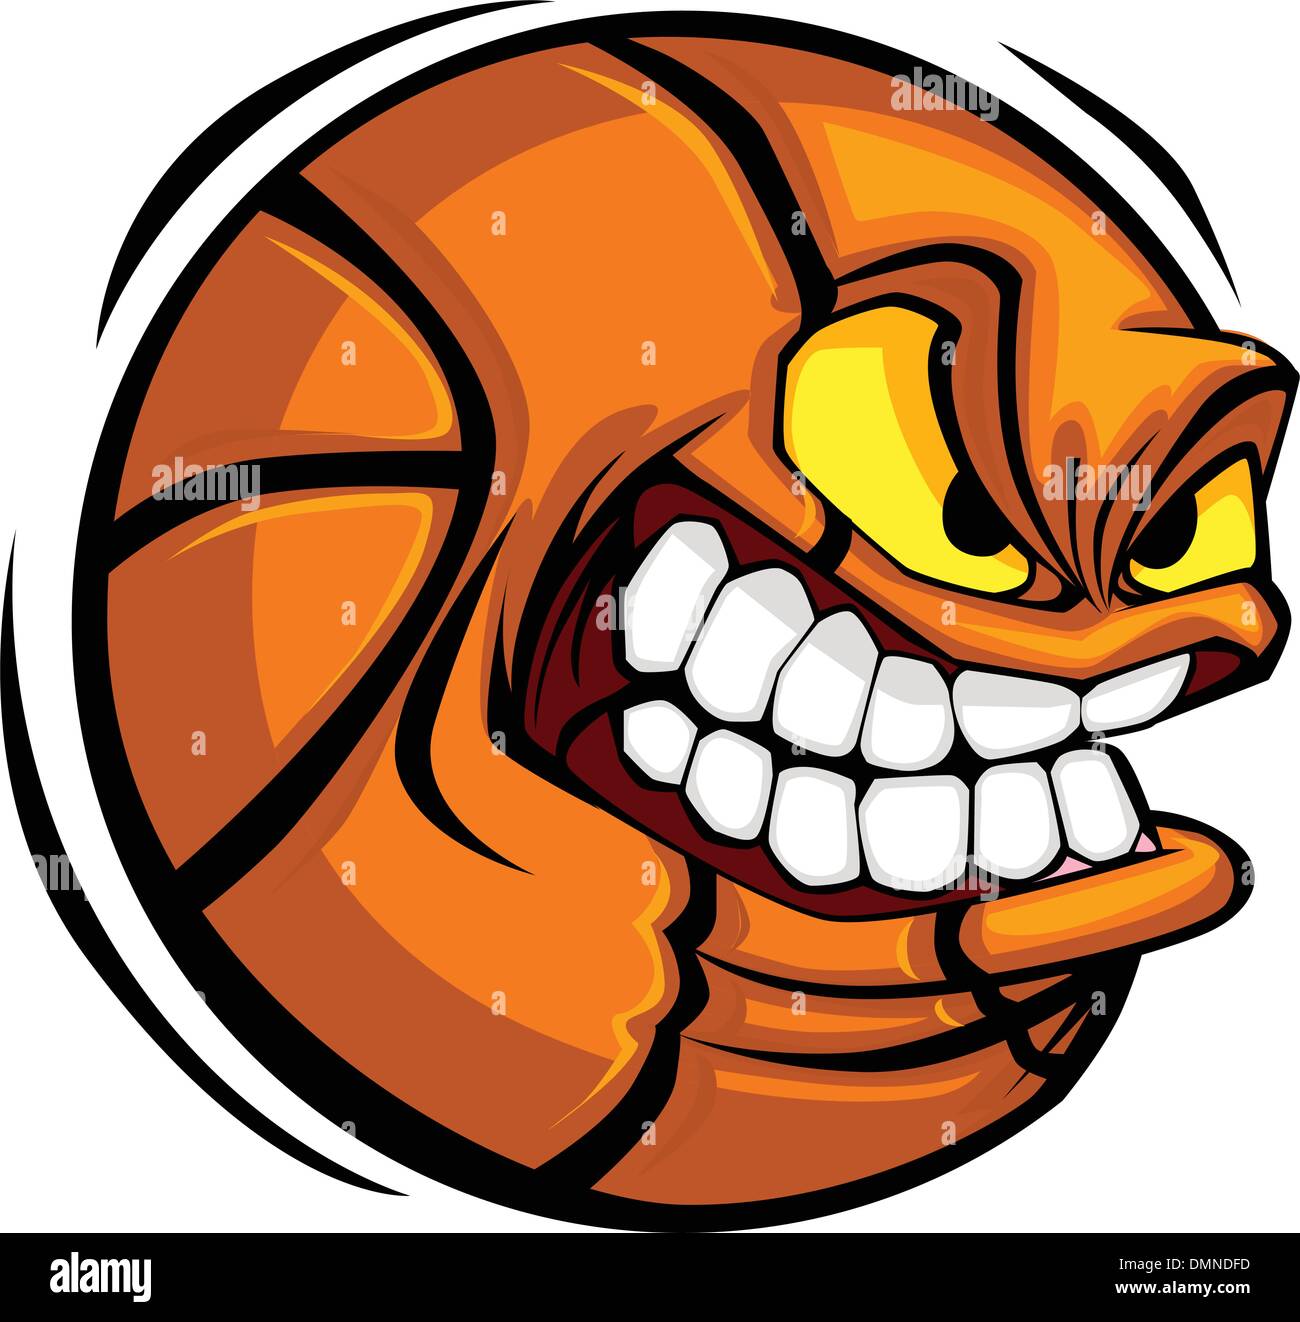 Basketball Face Cartoon Ball Vector Image Stock Vector